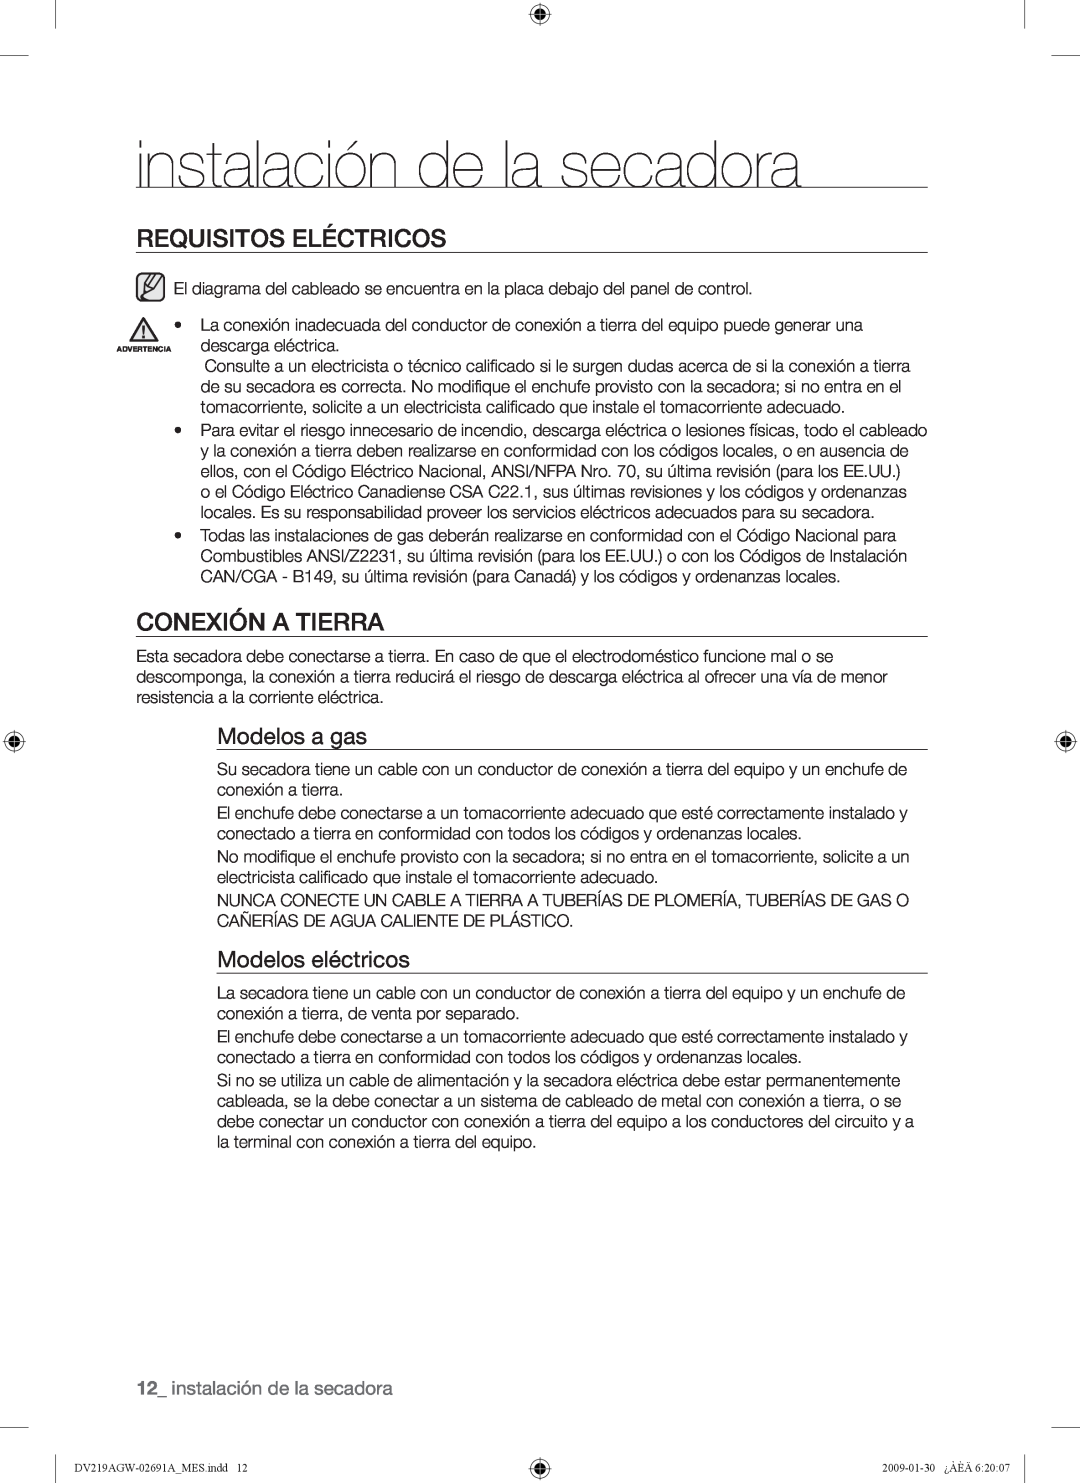 Samsung DV219AGW Requisitos Eléctricos, Conexión A Tierra, Modelos a gas, Modelos eléctricos, instalación de la secadora 